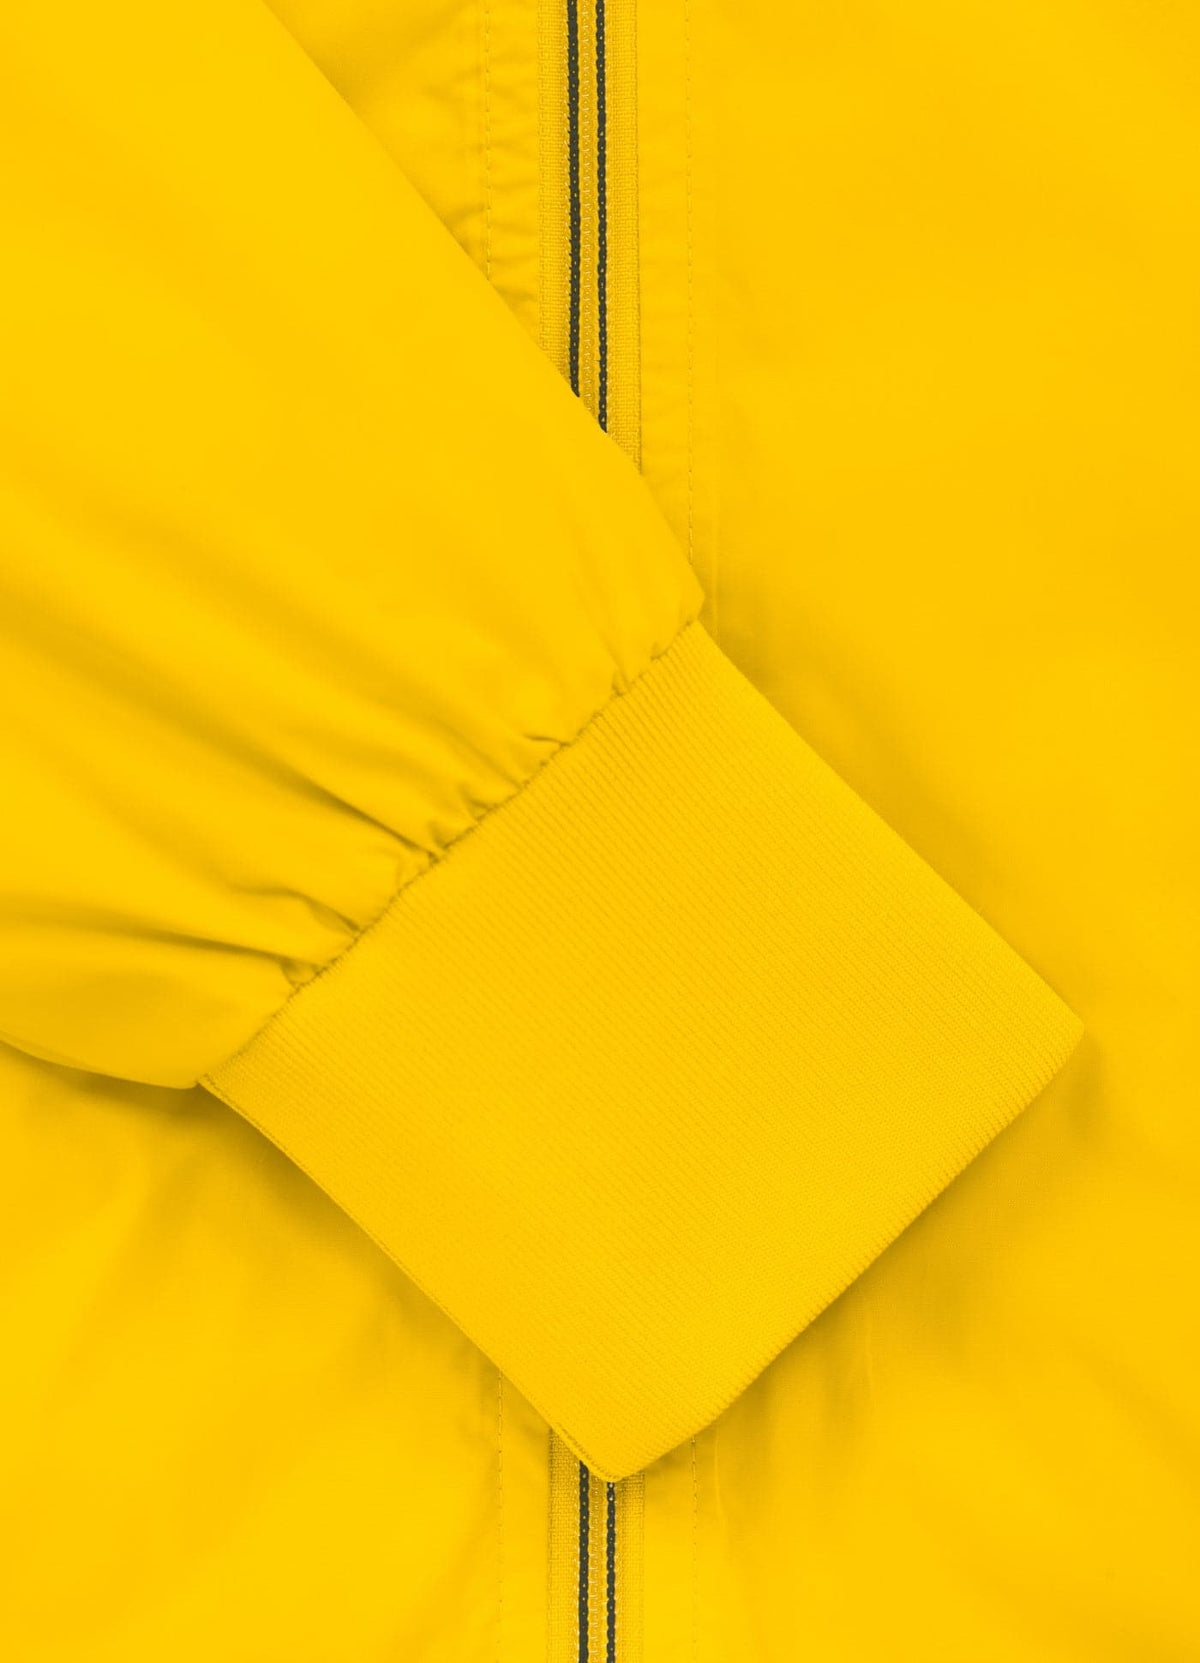 ATHLETIC LOGO Yellow Jacket